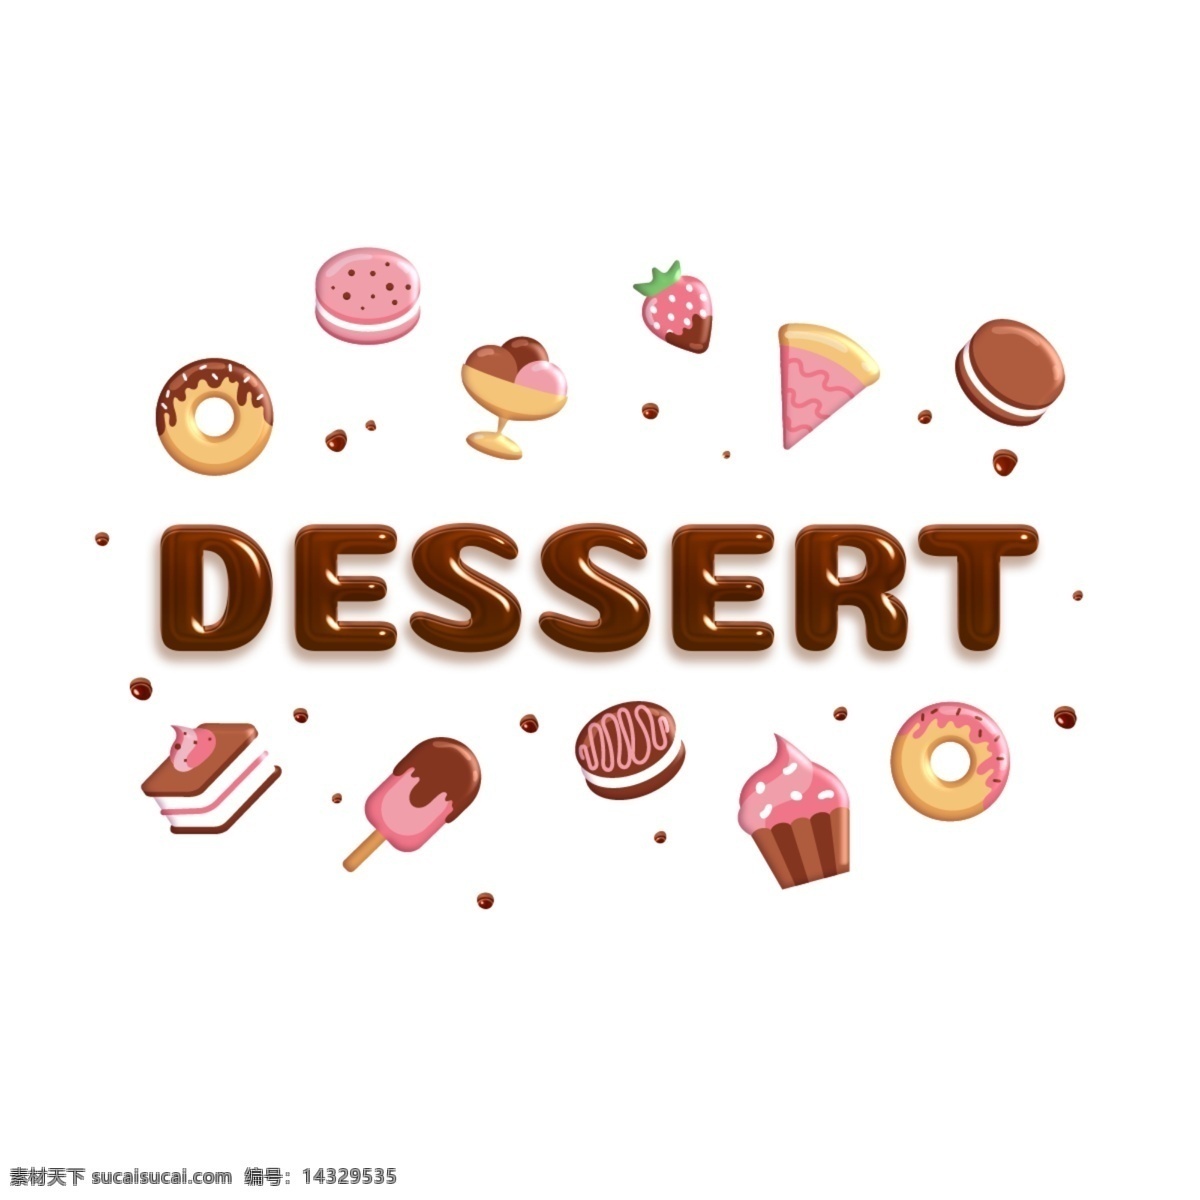 各种各样 甜点 背景 容量 巧克力 题字 dessert 插图 卡 符号 现代 装饰 棕色 画 宾语 美丽 元件 当下 模板 抽象 动画片 容积 大纲 亮 光滑 颜色 刻字 题词 甜 甜甜圈 杯形饼 蛋糕 冰淇淋 芝士蛋糕 饼干 草莓